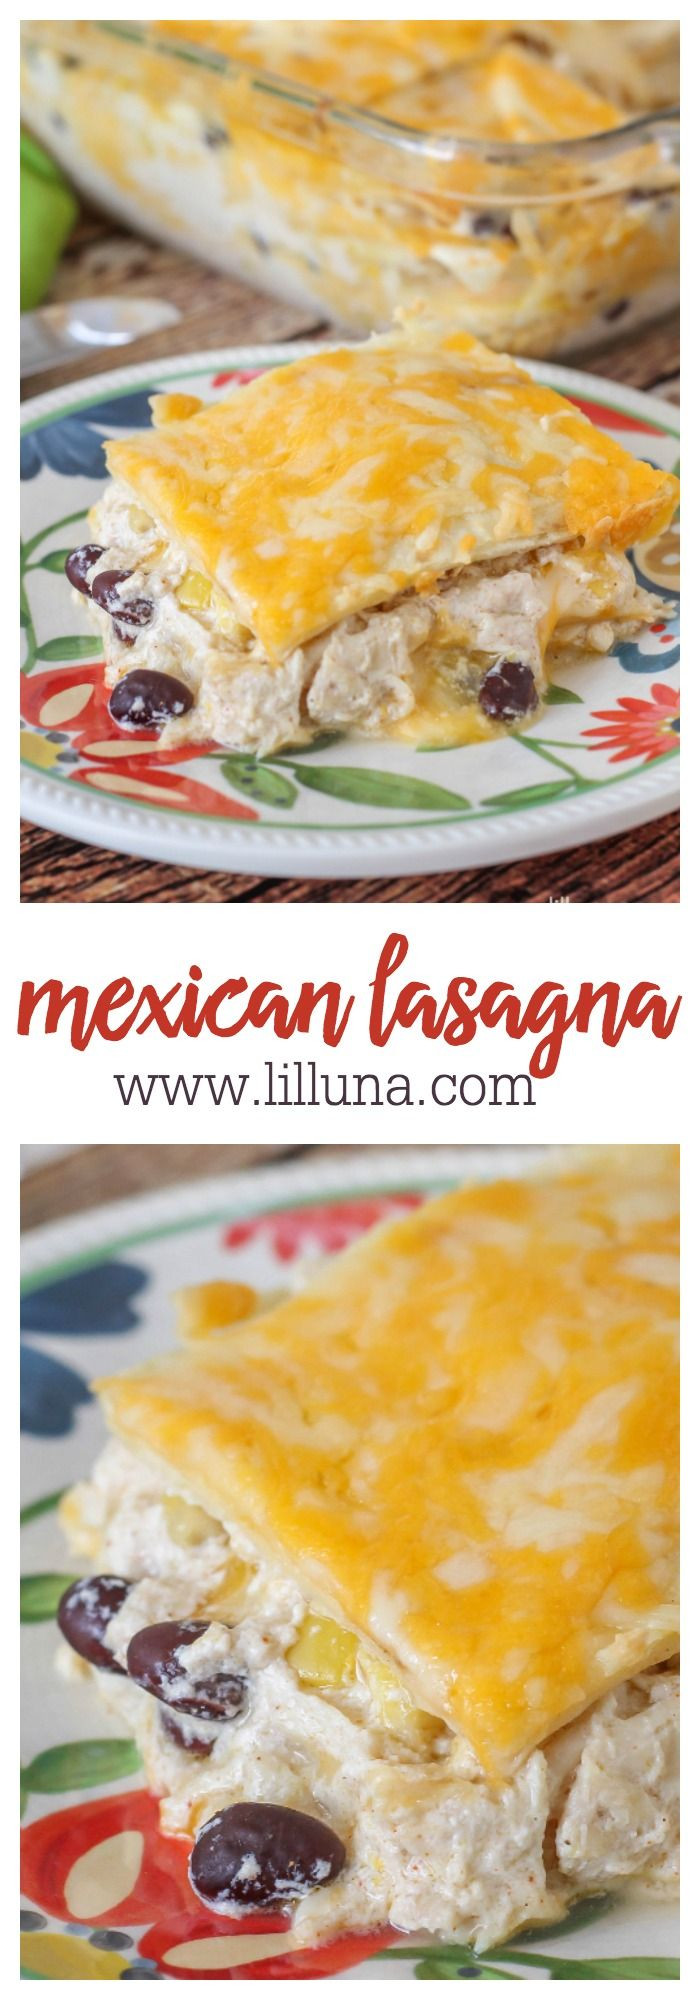 Mexican Lasagna Recipe With Tortillas
 Mexican Lasagna Recipe